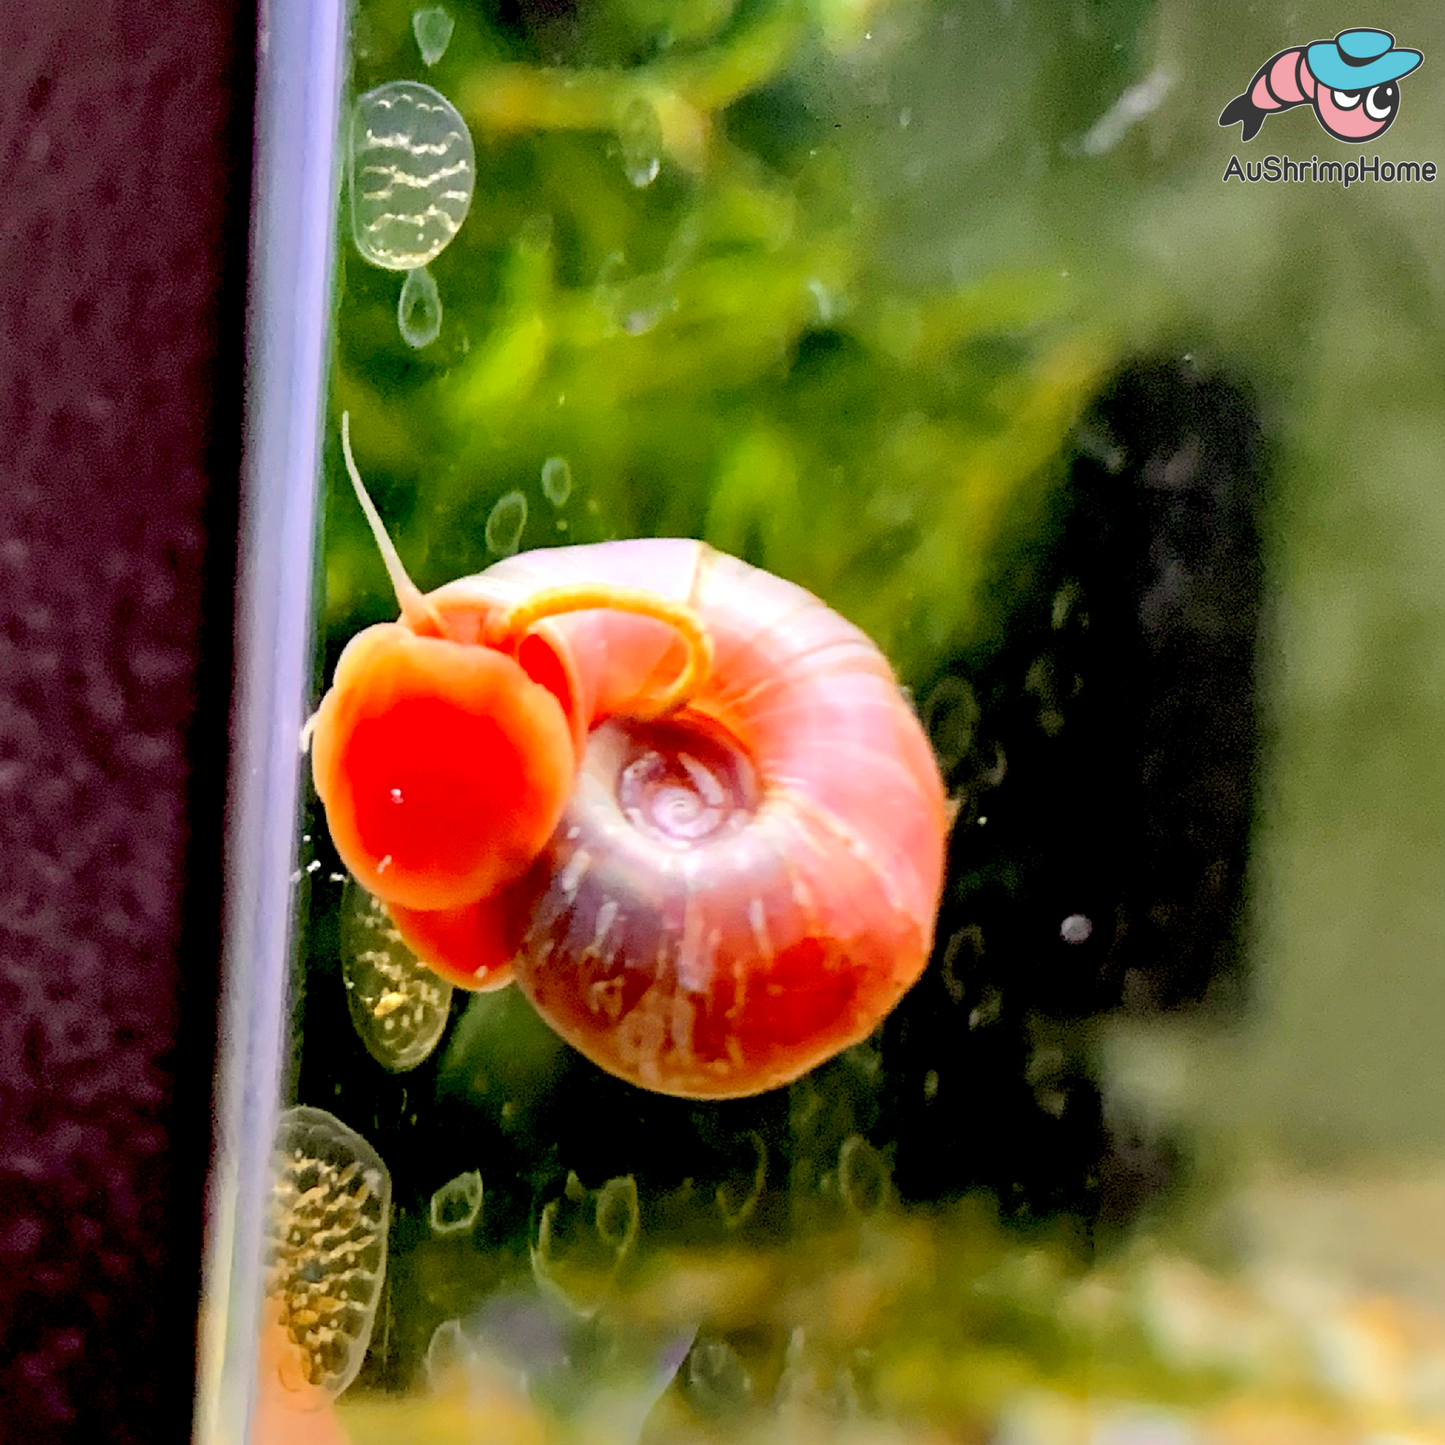 Pink Foot Ramshorn Snail | Algae-eating Snail